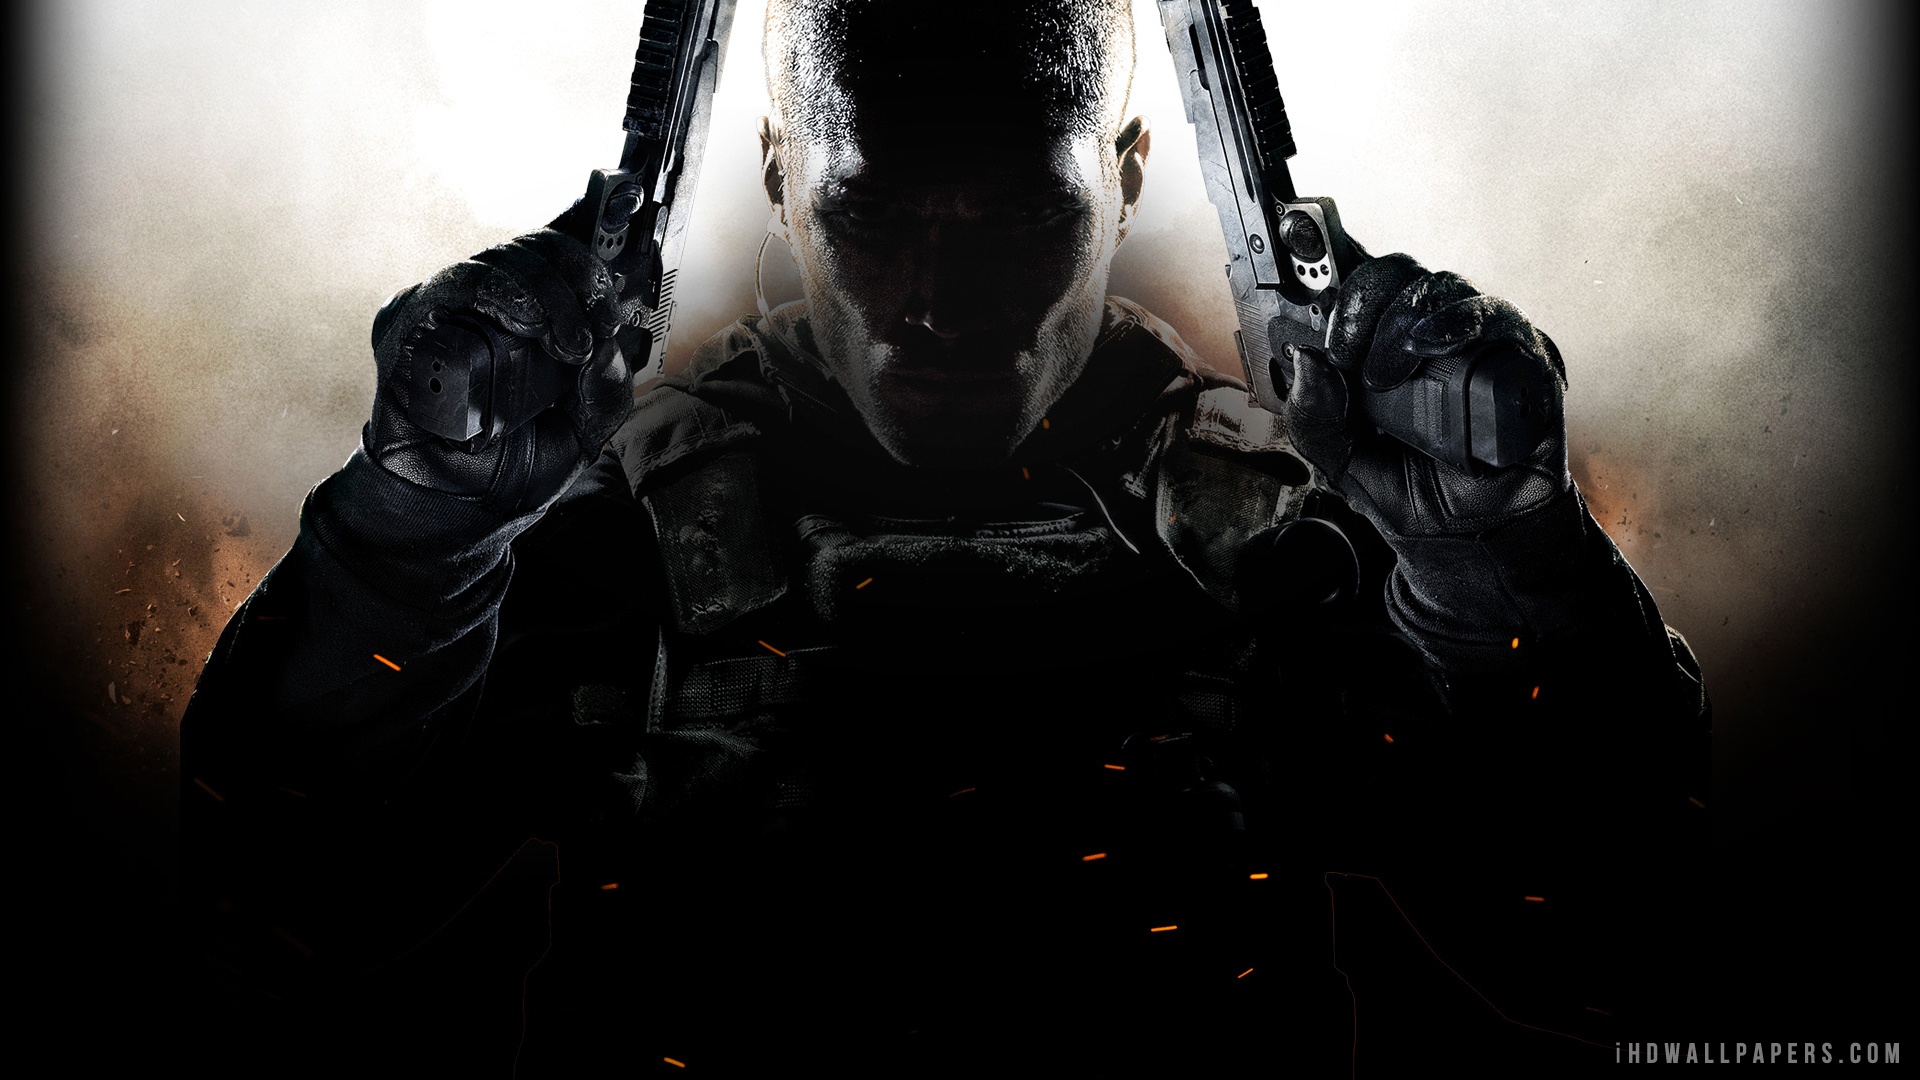 Call Of Duty Black Ops Call Of Duty Black Ops Ii Video Games Dark Video Game Art Soldier Weapon Gun 1920x1080